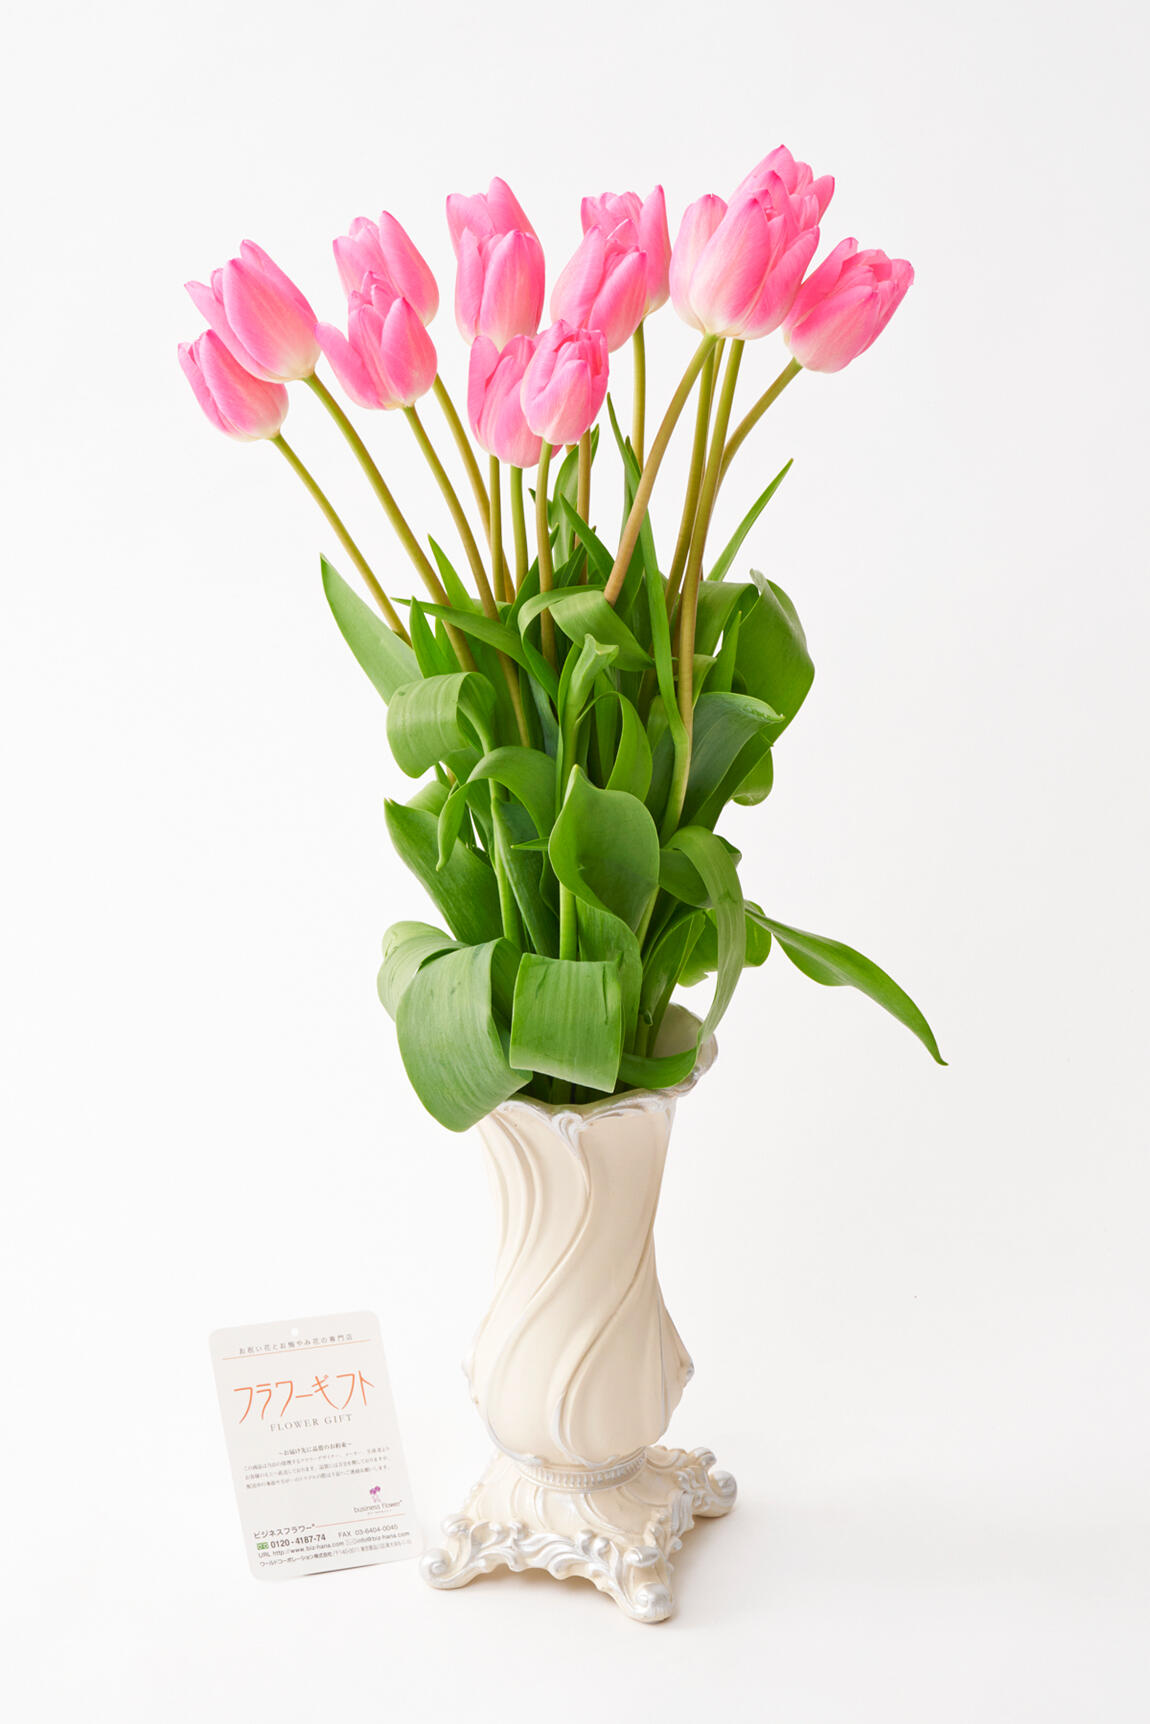 <p>花瓶付きのチューリップの花束は、1月から3月の結婚祝い、昇進祝い、退職される方へのお祝い花としてはもちろん、春の開店祝い、移転祝いなどの贈答花としてもおすすめしたい花ギフトです。</p>